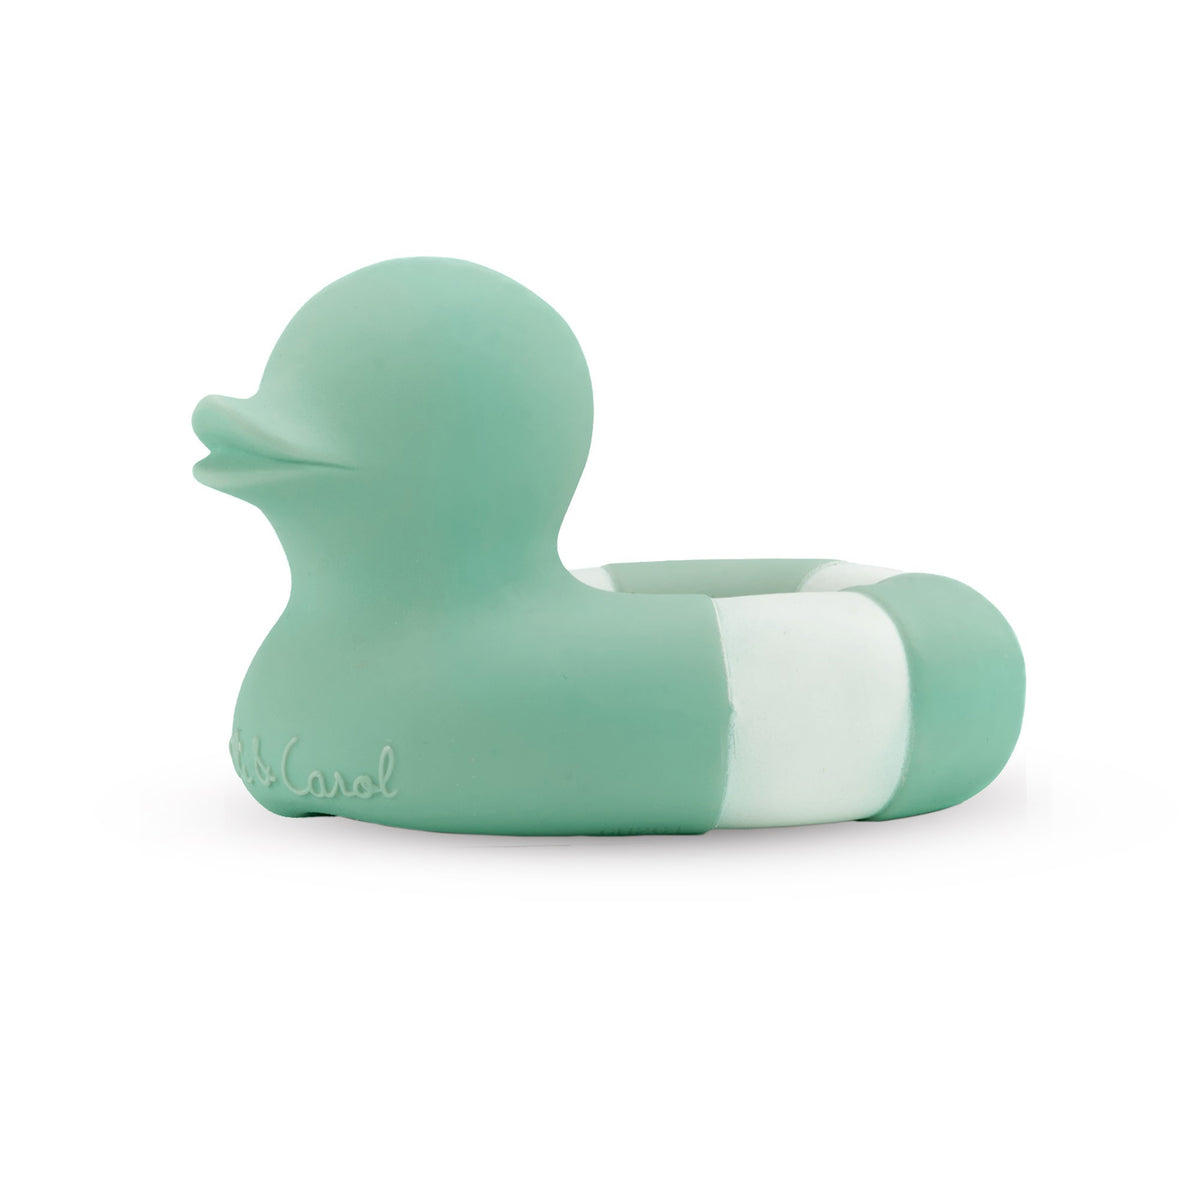 oli-&amp;-carol-floatie-duck-mint- (1)